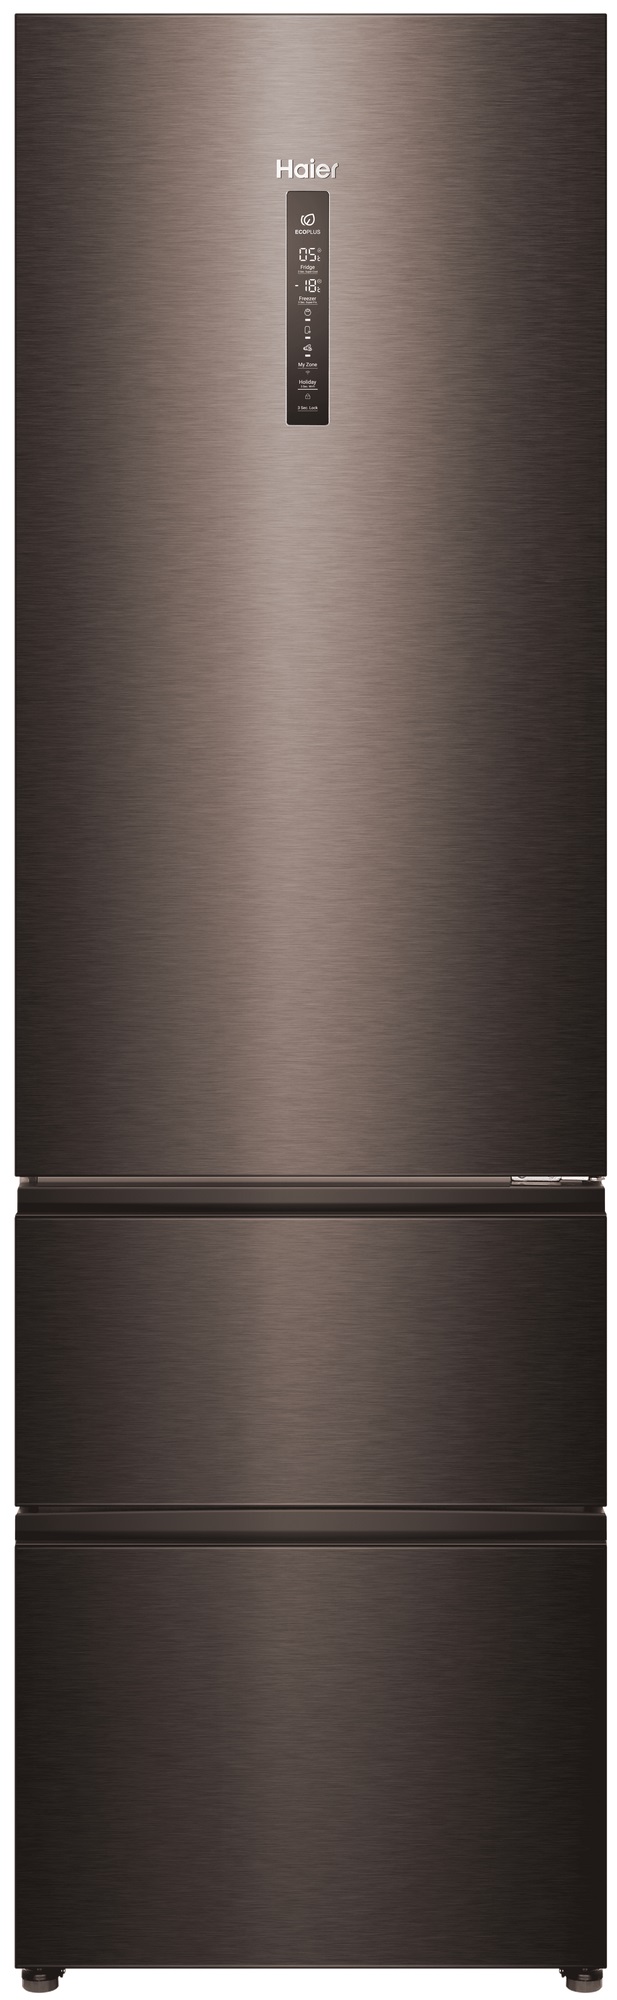 Холодильник Haier A4F739CDBGU1 серый холодильник haier c2f637cfmv серый